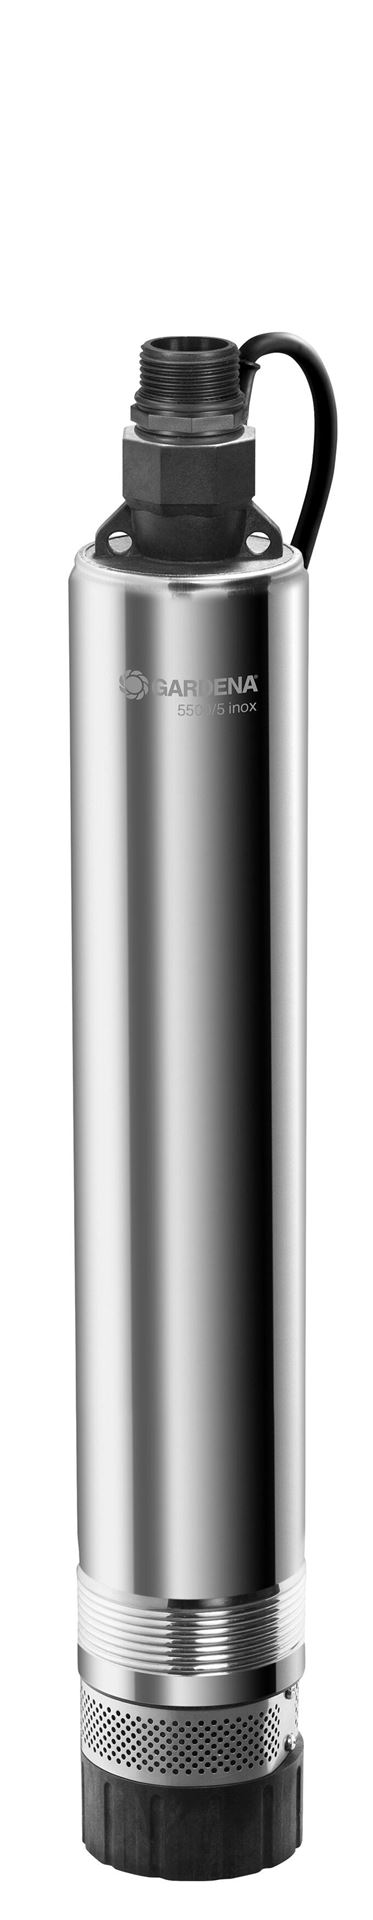 Dieptebronpomp-dompel-drukopvoerpomp-6000-5-inox